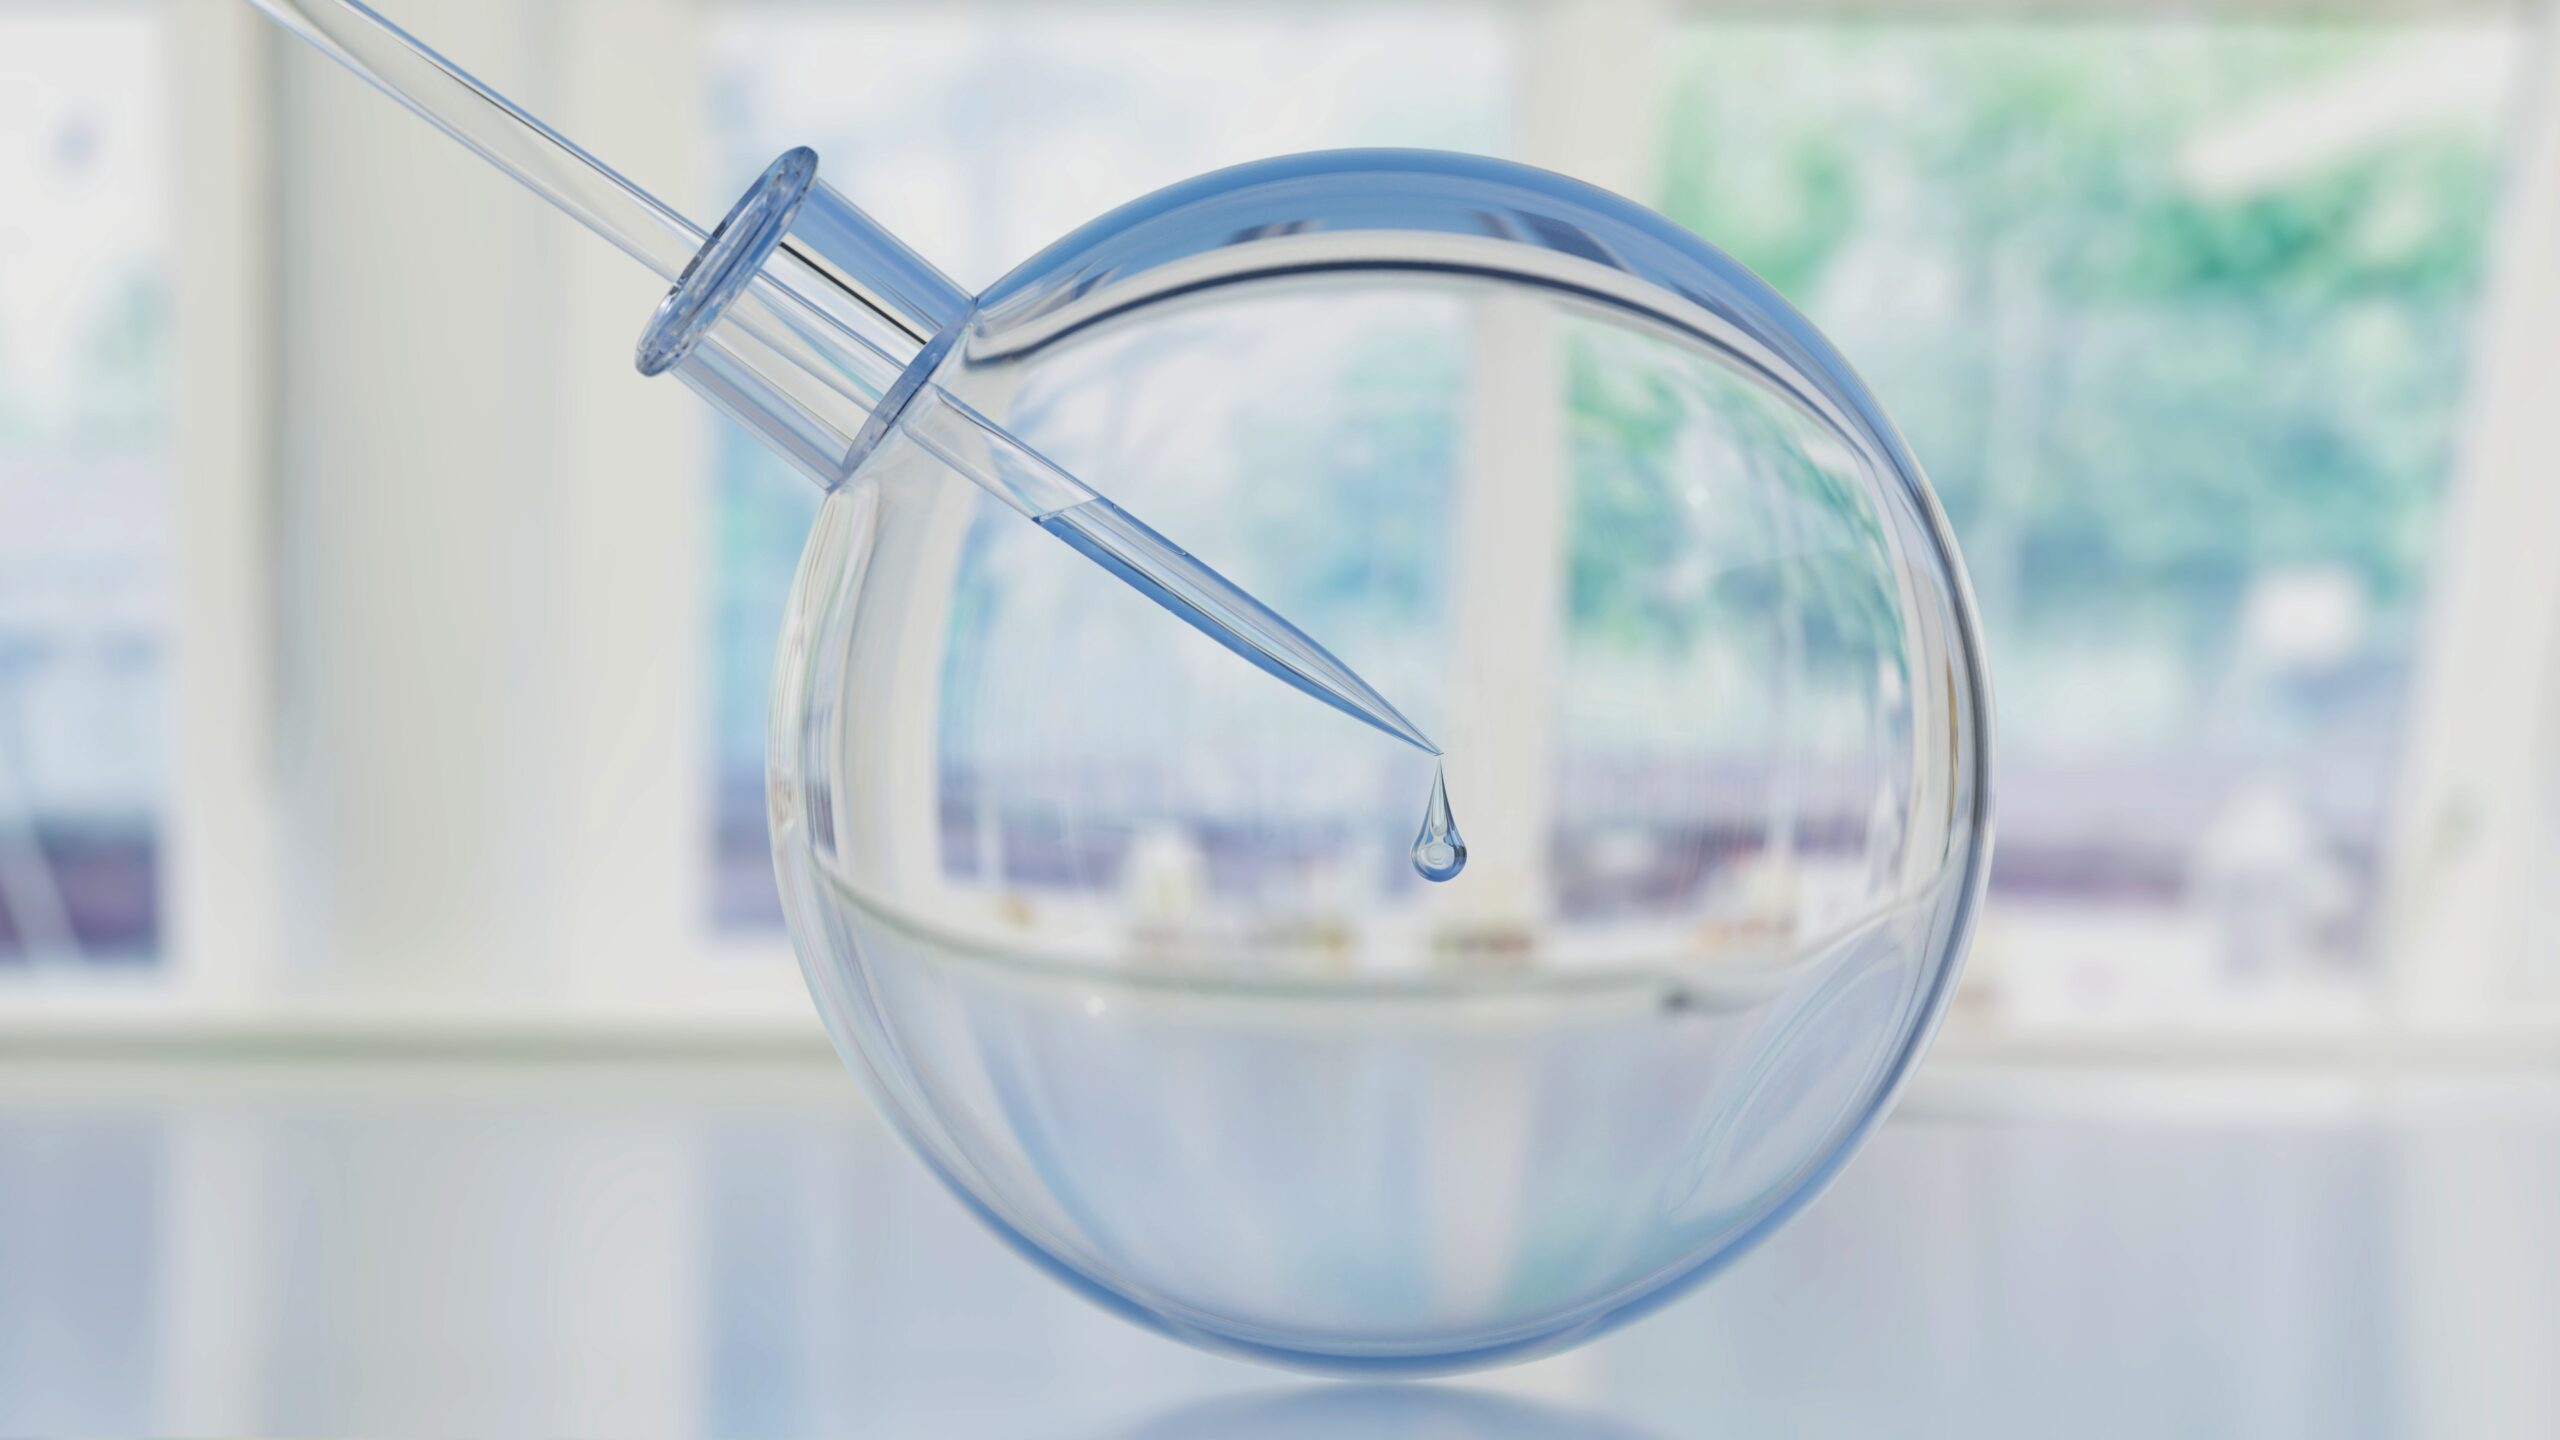 Glaskugel, in der eine Spritze Wasser einfüllt. Symbolisch für die Ergebnisse des MEHQ